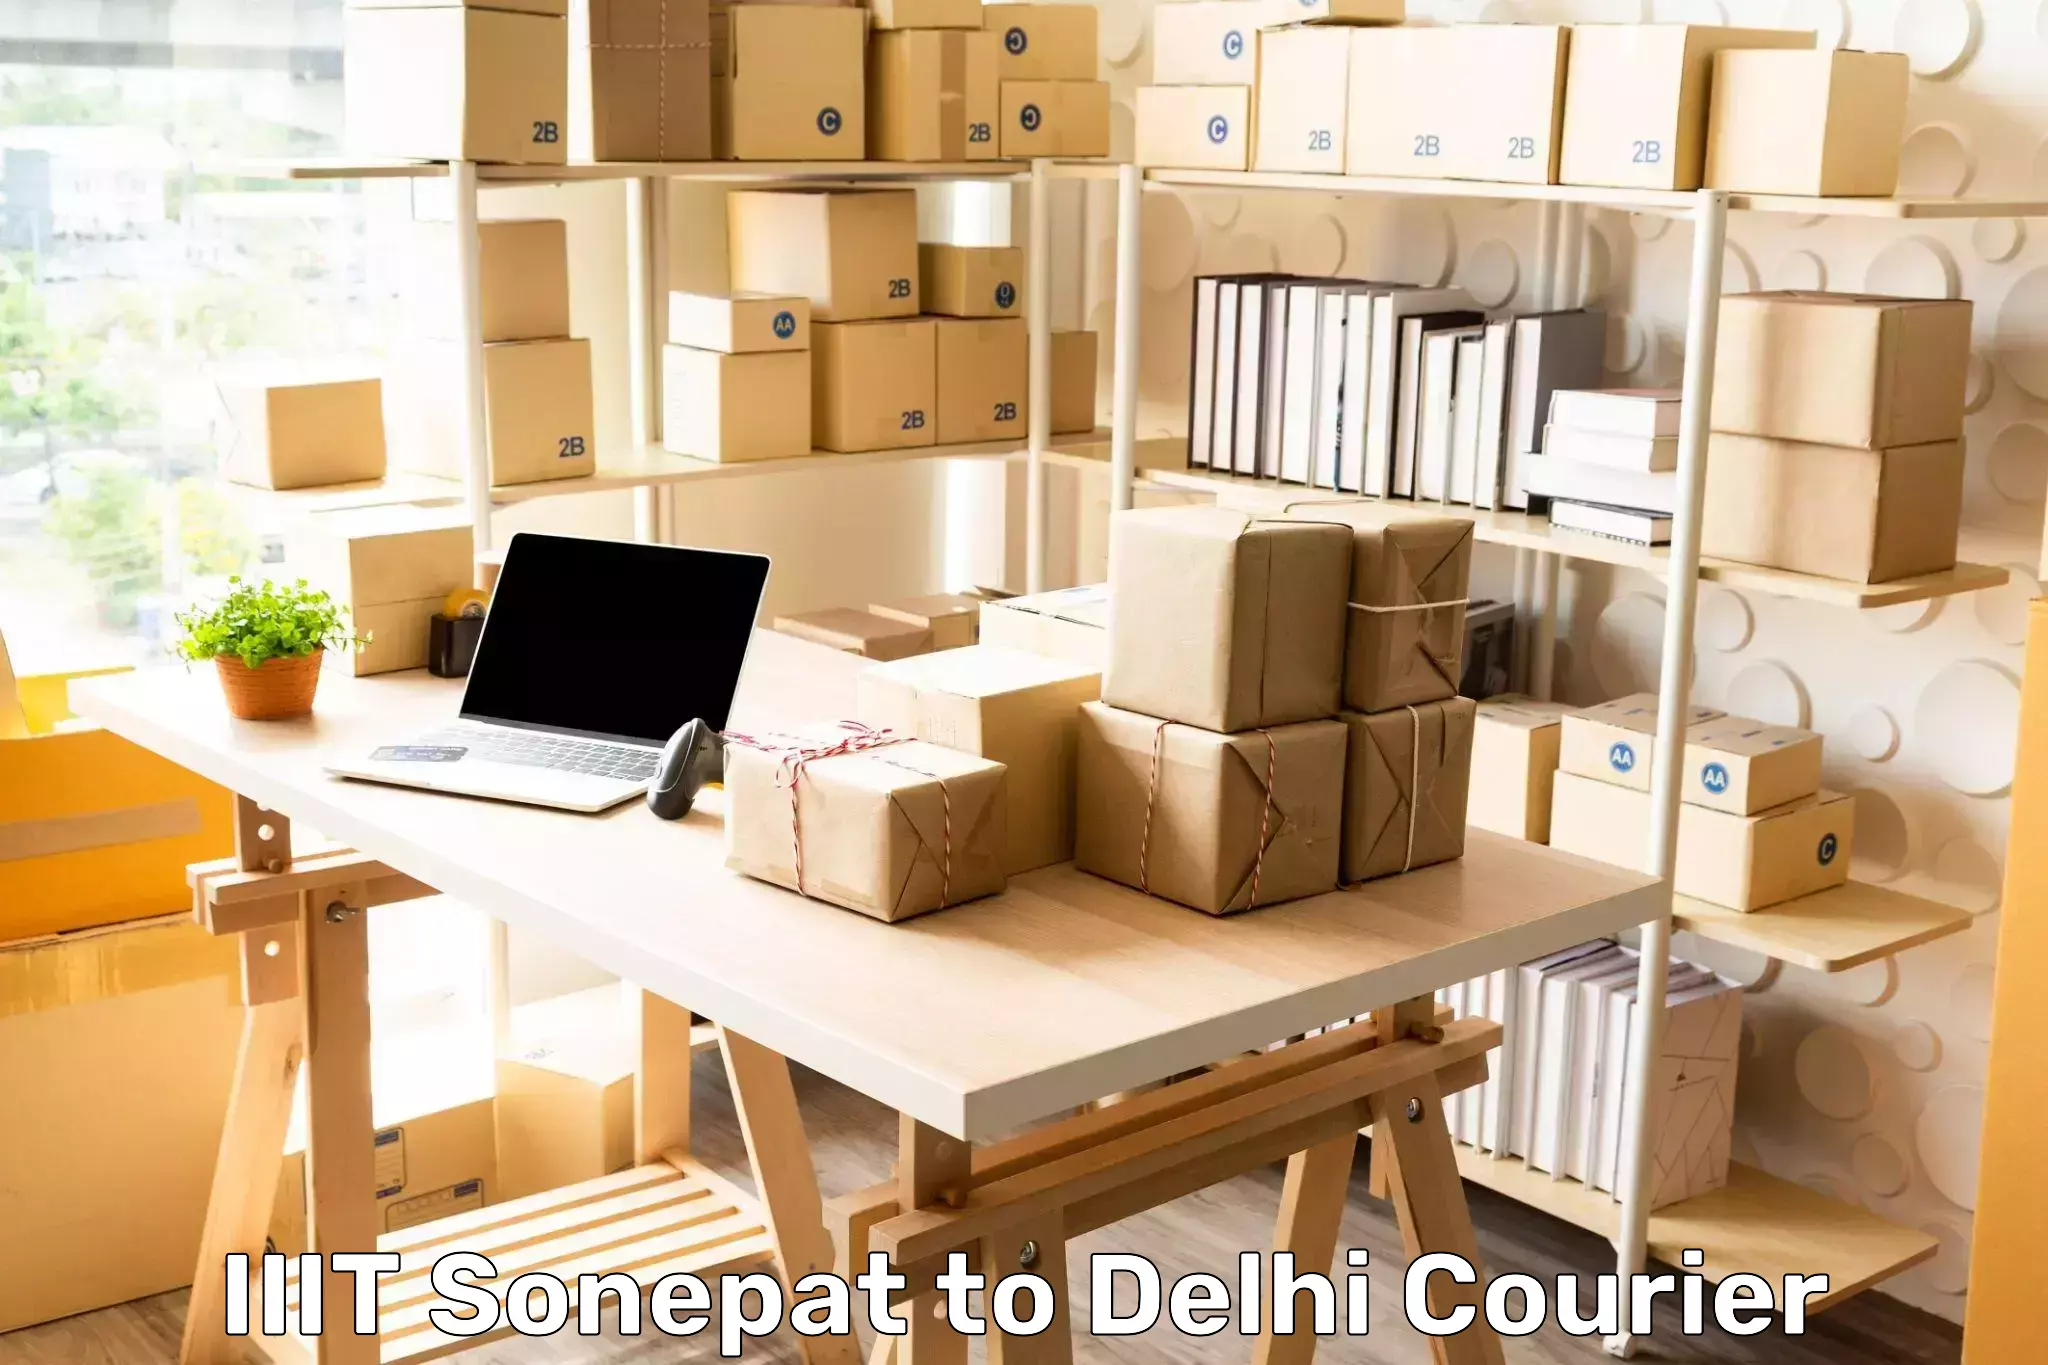 Weekend courier service in IIIT Sonepat to University of Delhi